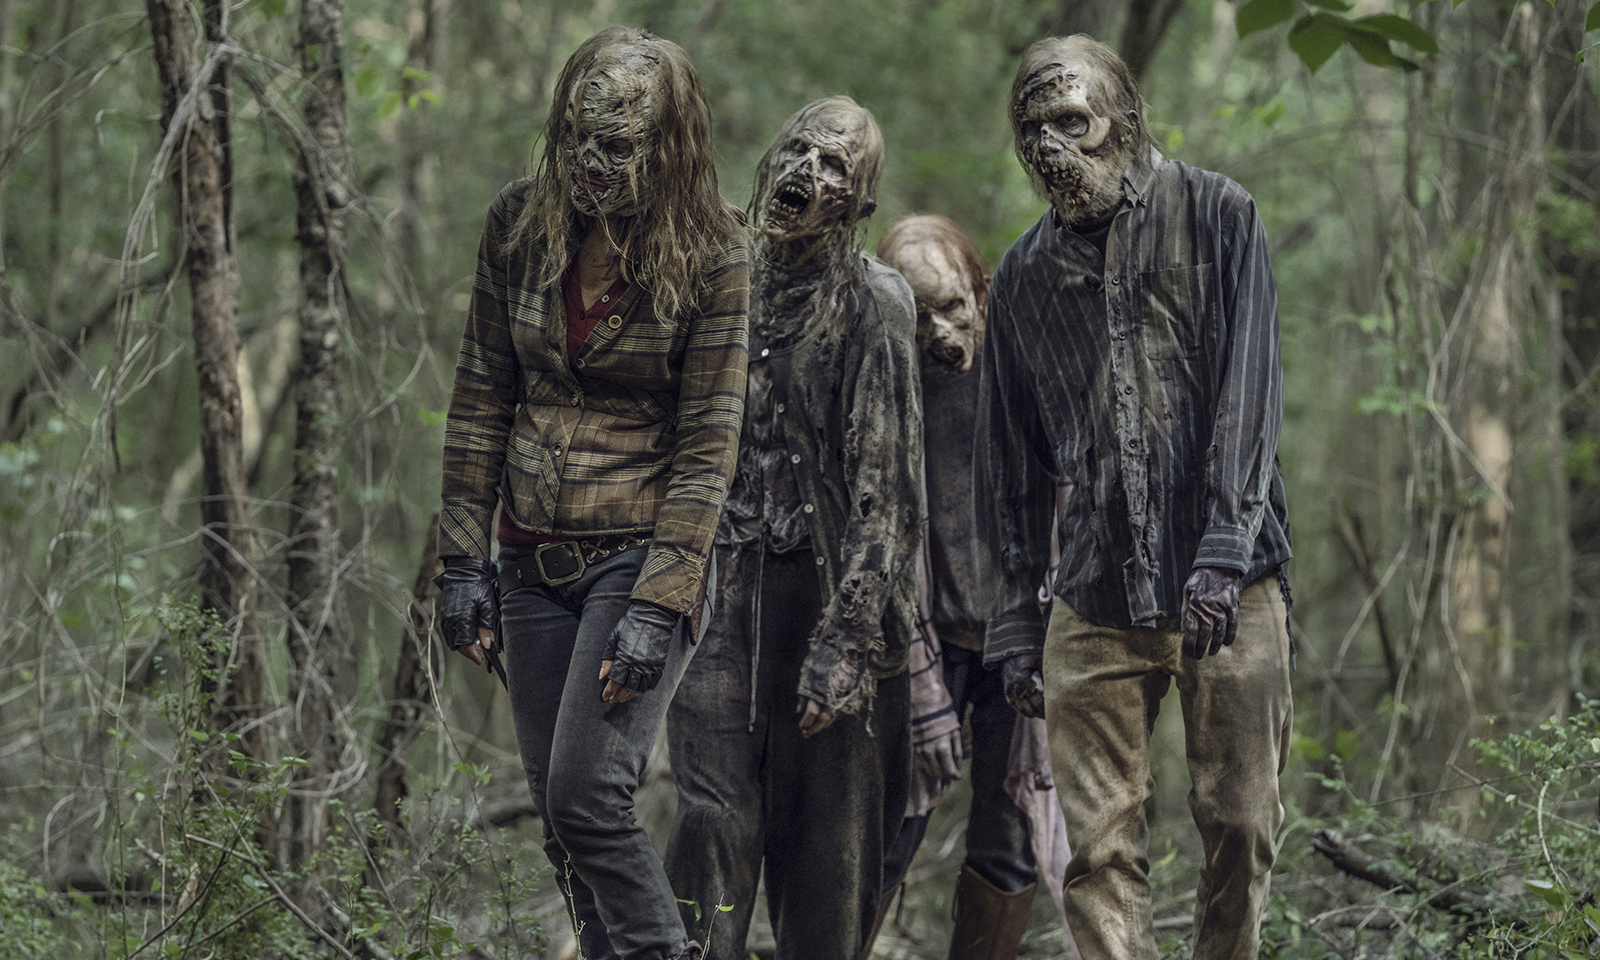 CRÍTICA | The Walking Dead S11E07 – “Promises Broken”: Erros e Táticas